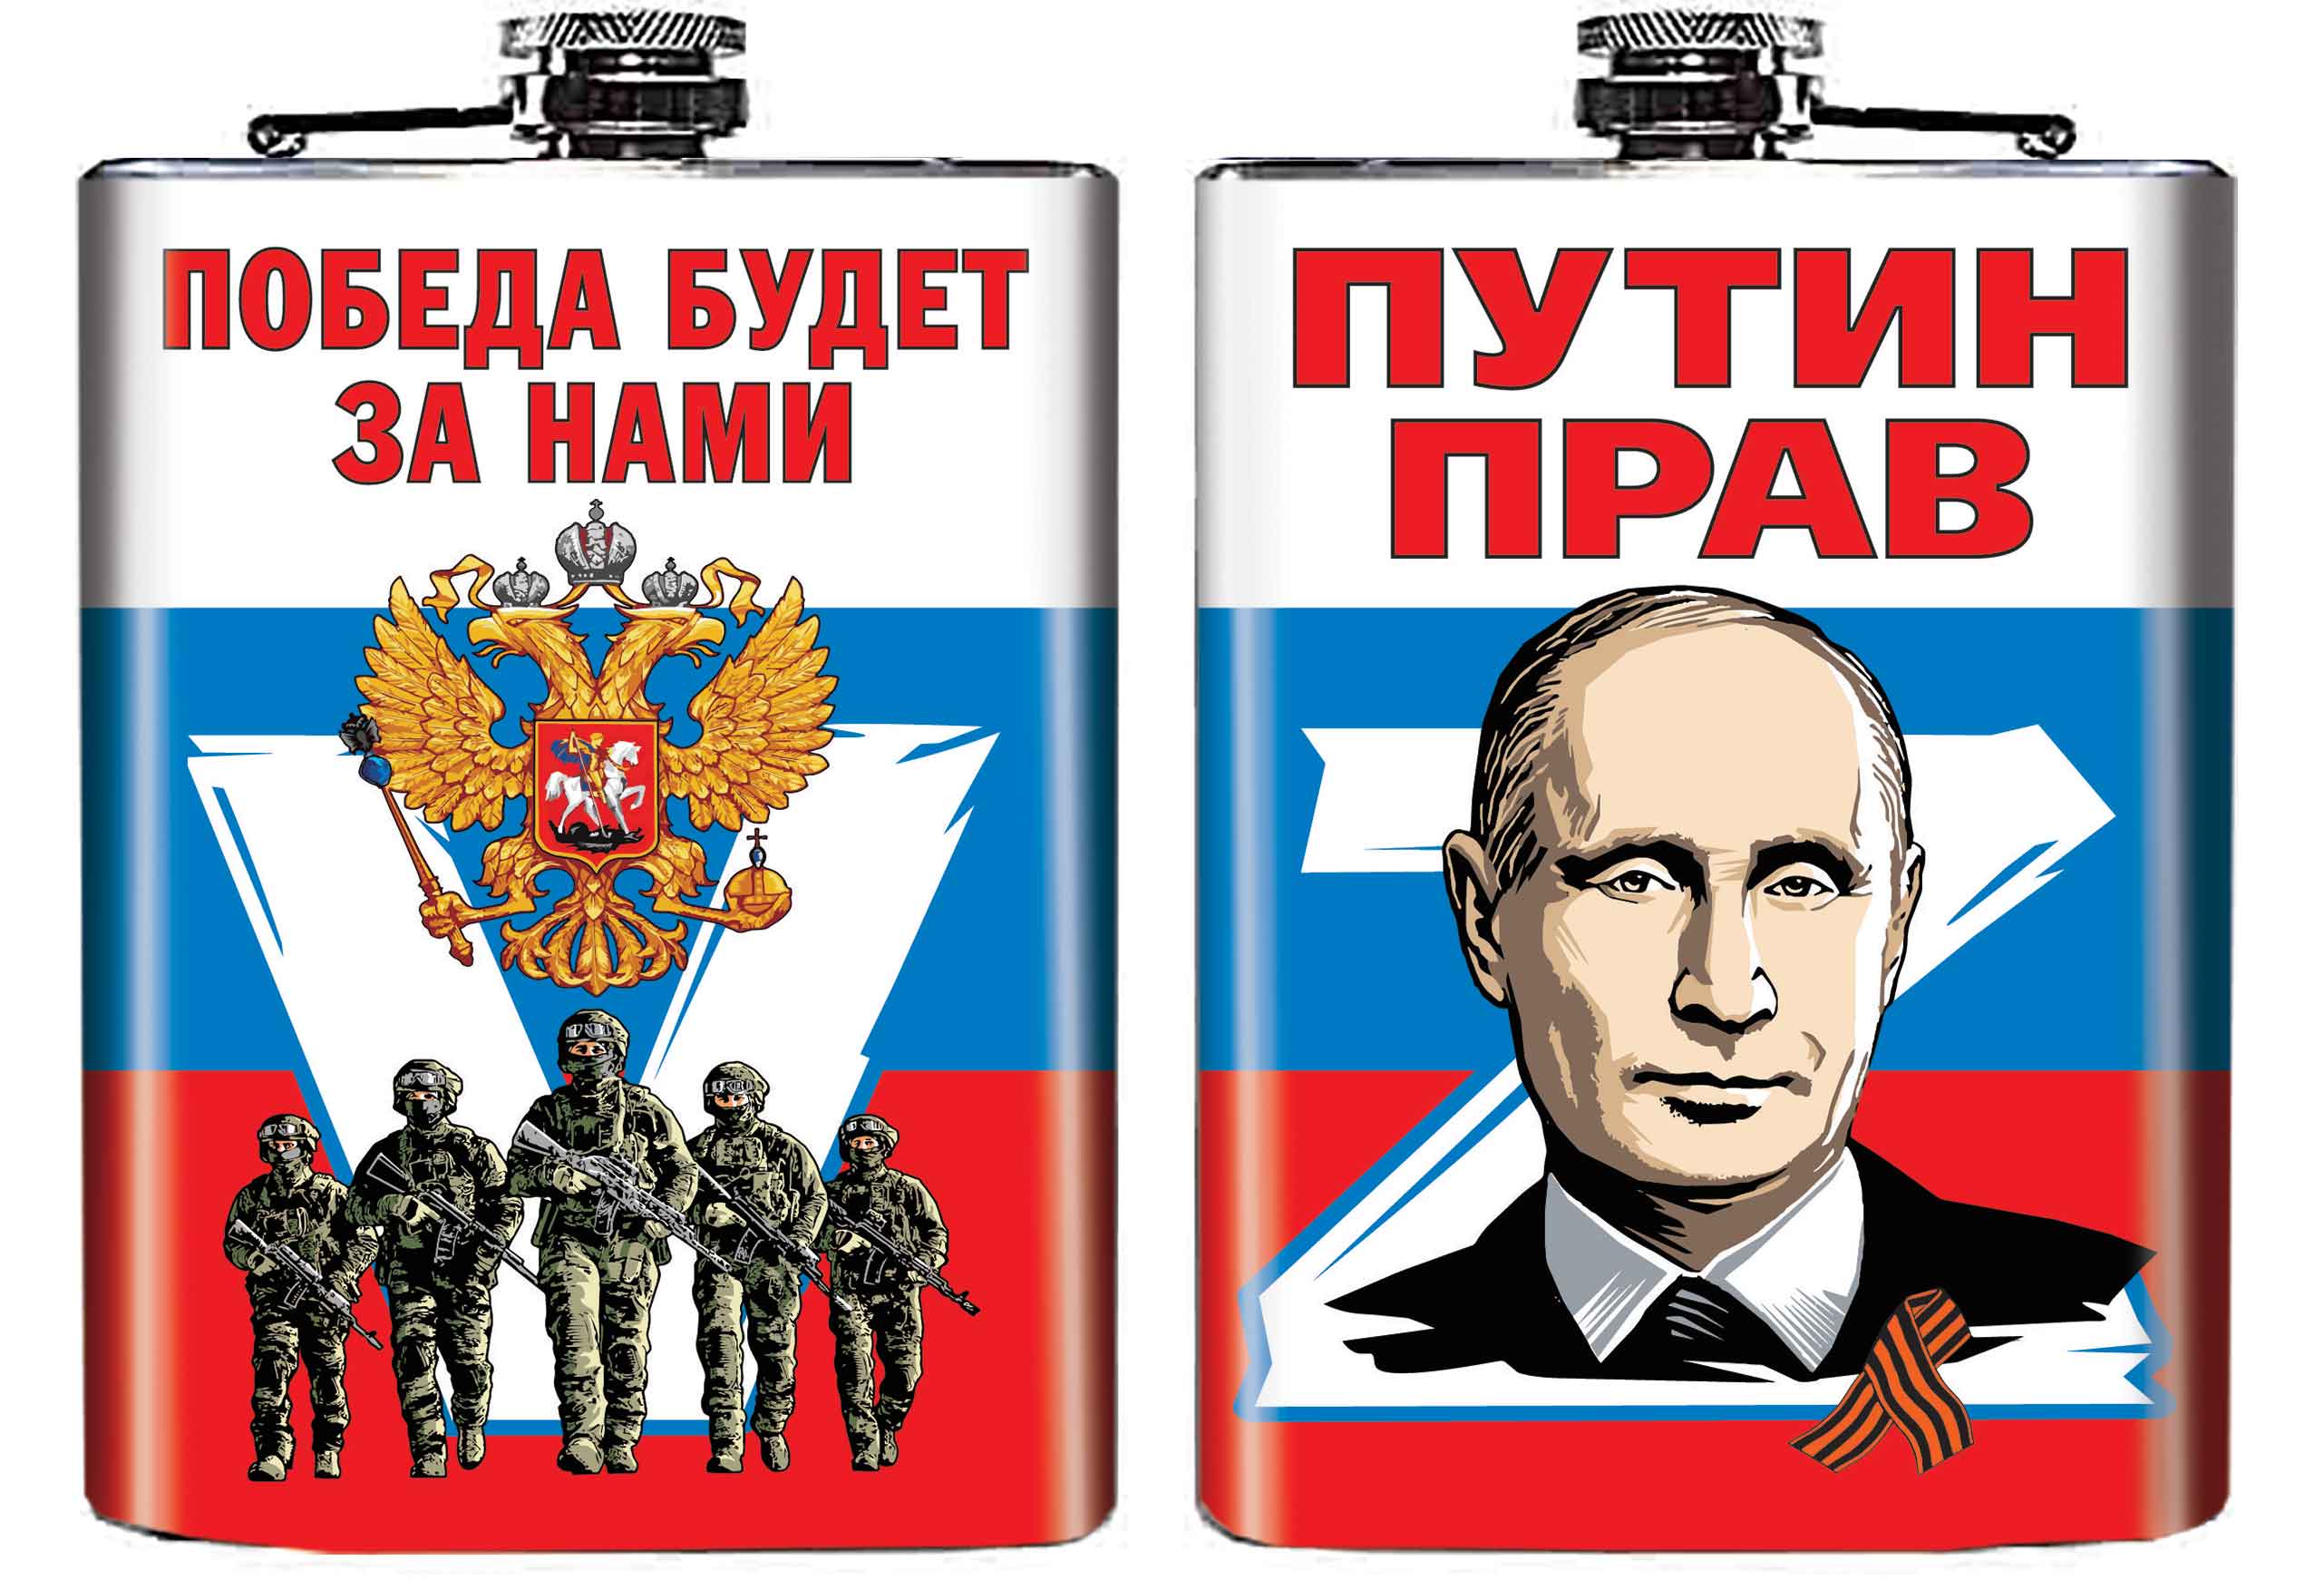 Купить в подарок фляжку Z "Путин прав"